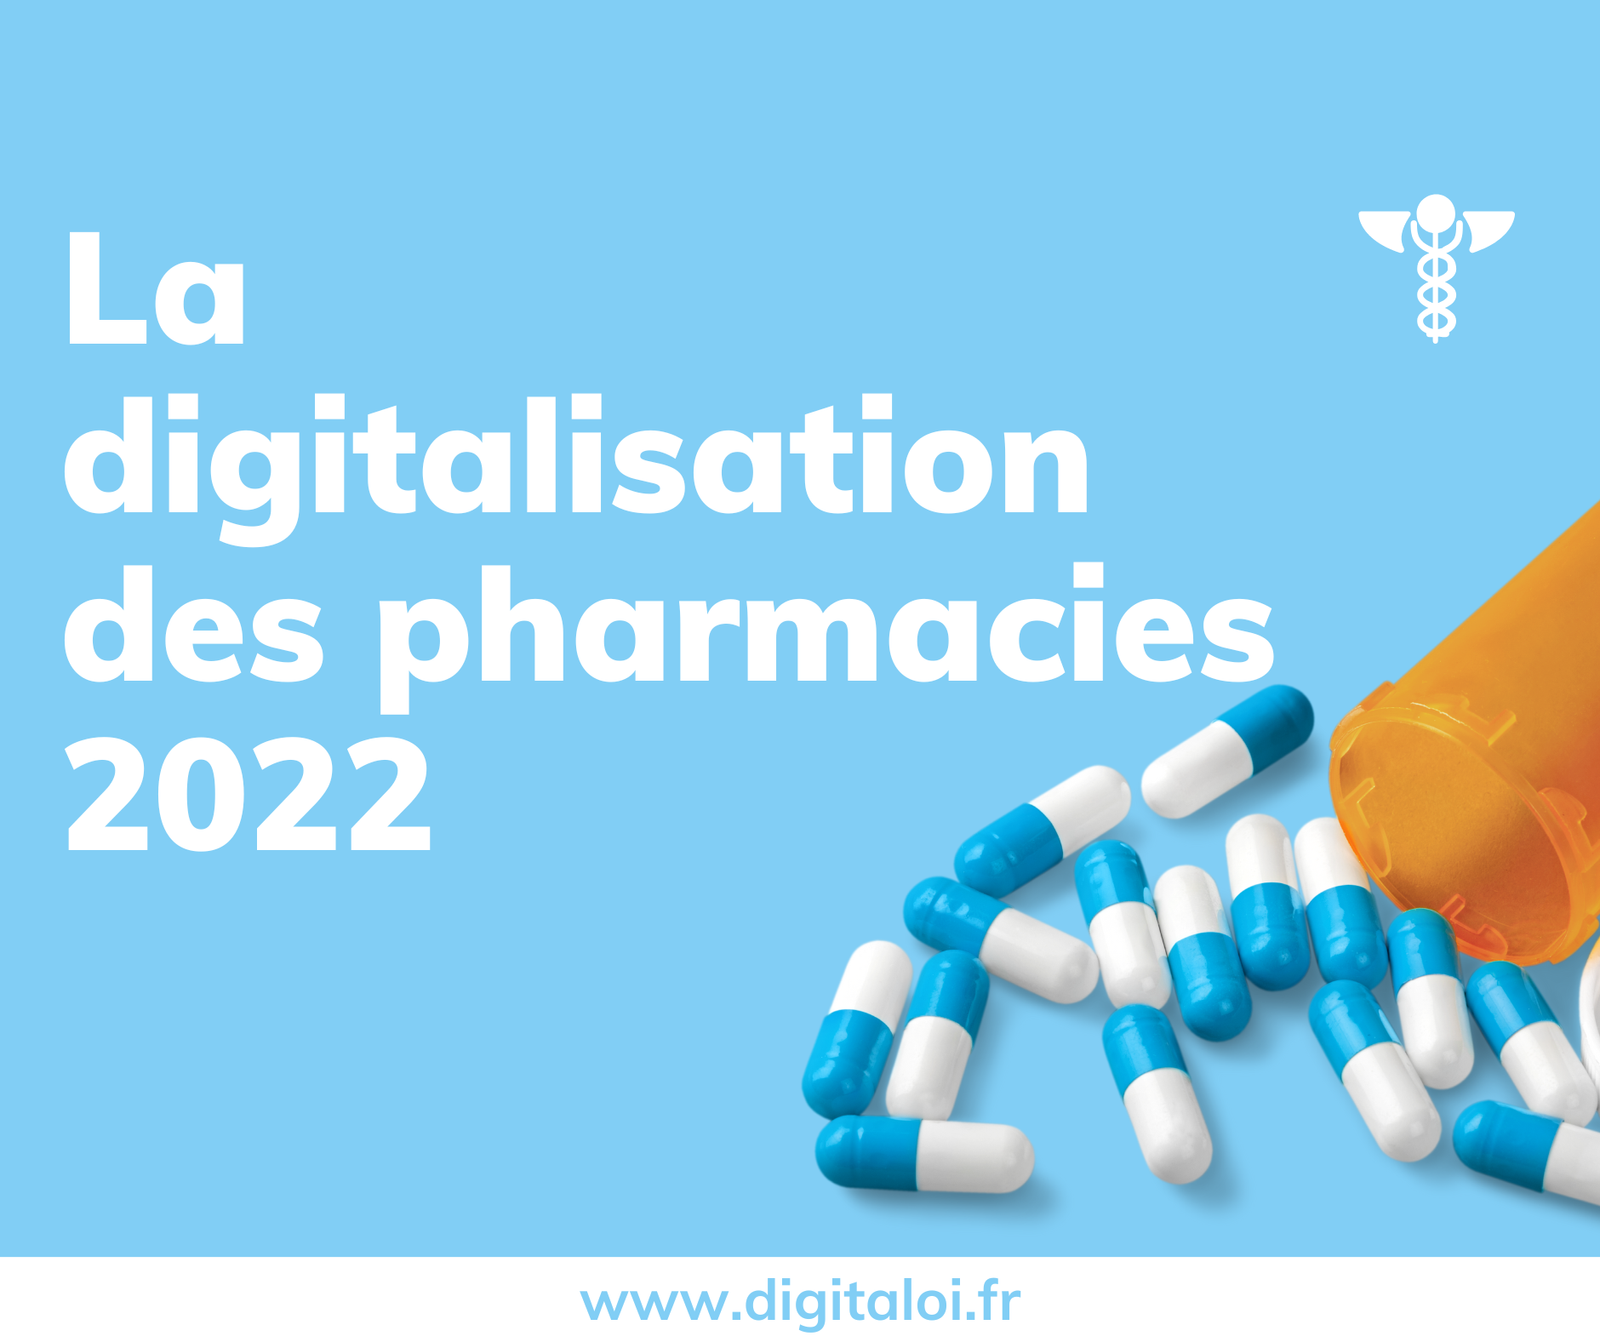 La digitalisation des pharmacies